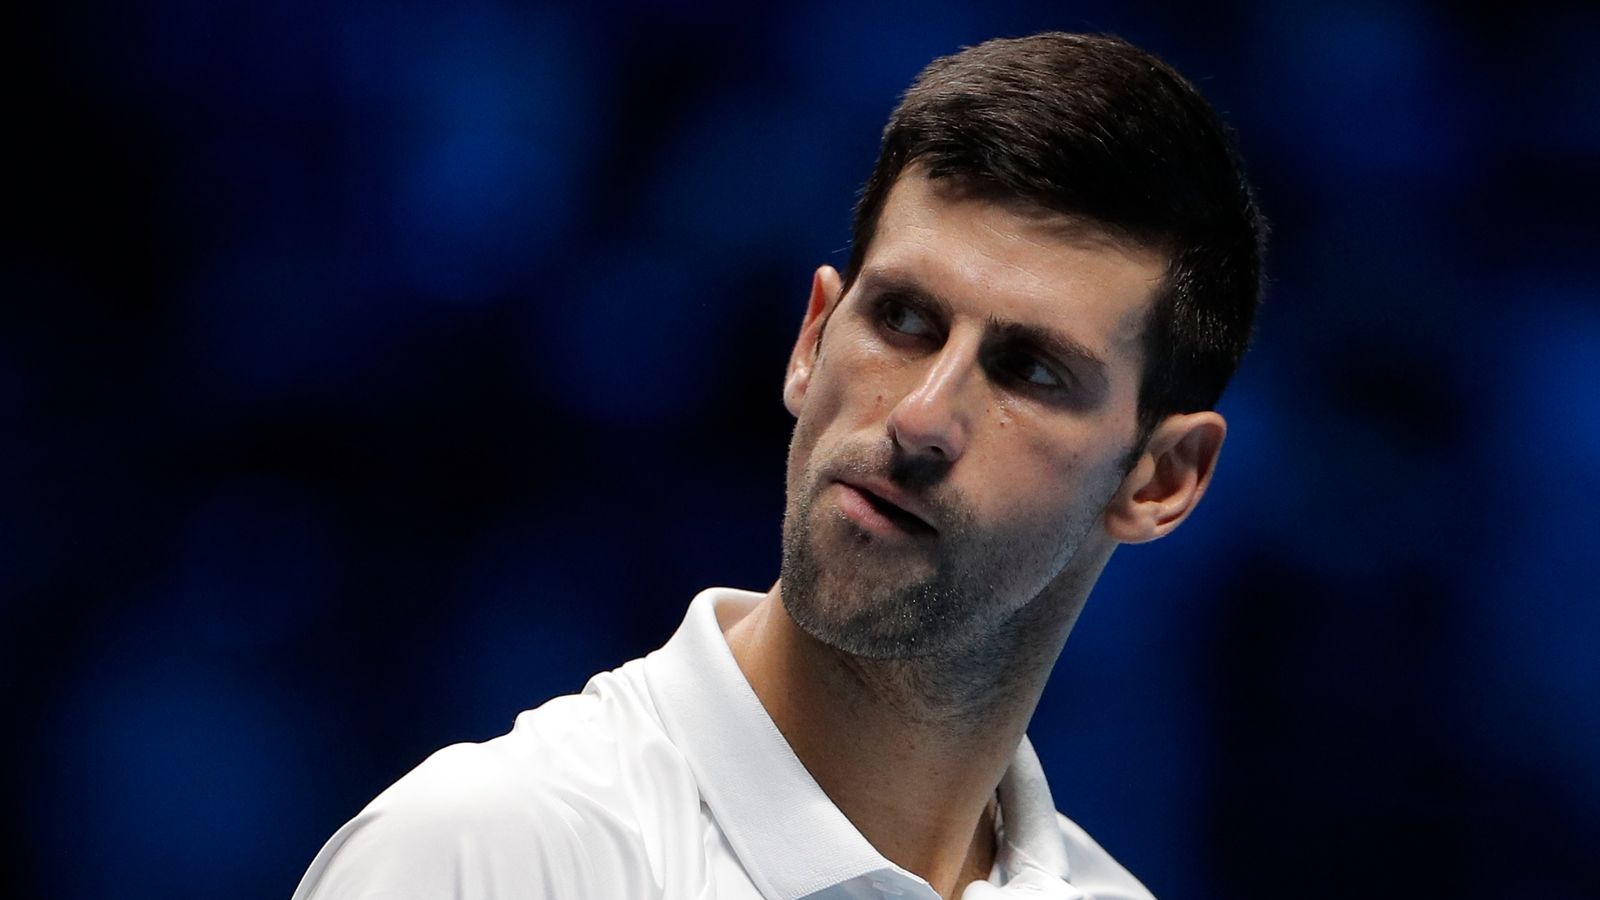 Döntött a bíróság: Djokovics hivatalosan is maradhat Ausztráliában